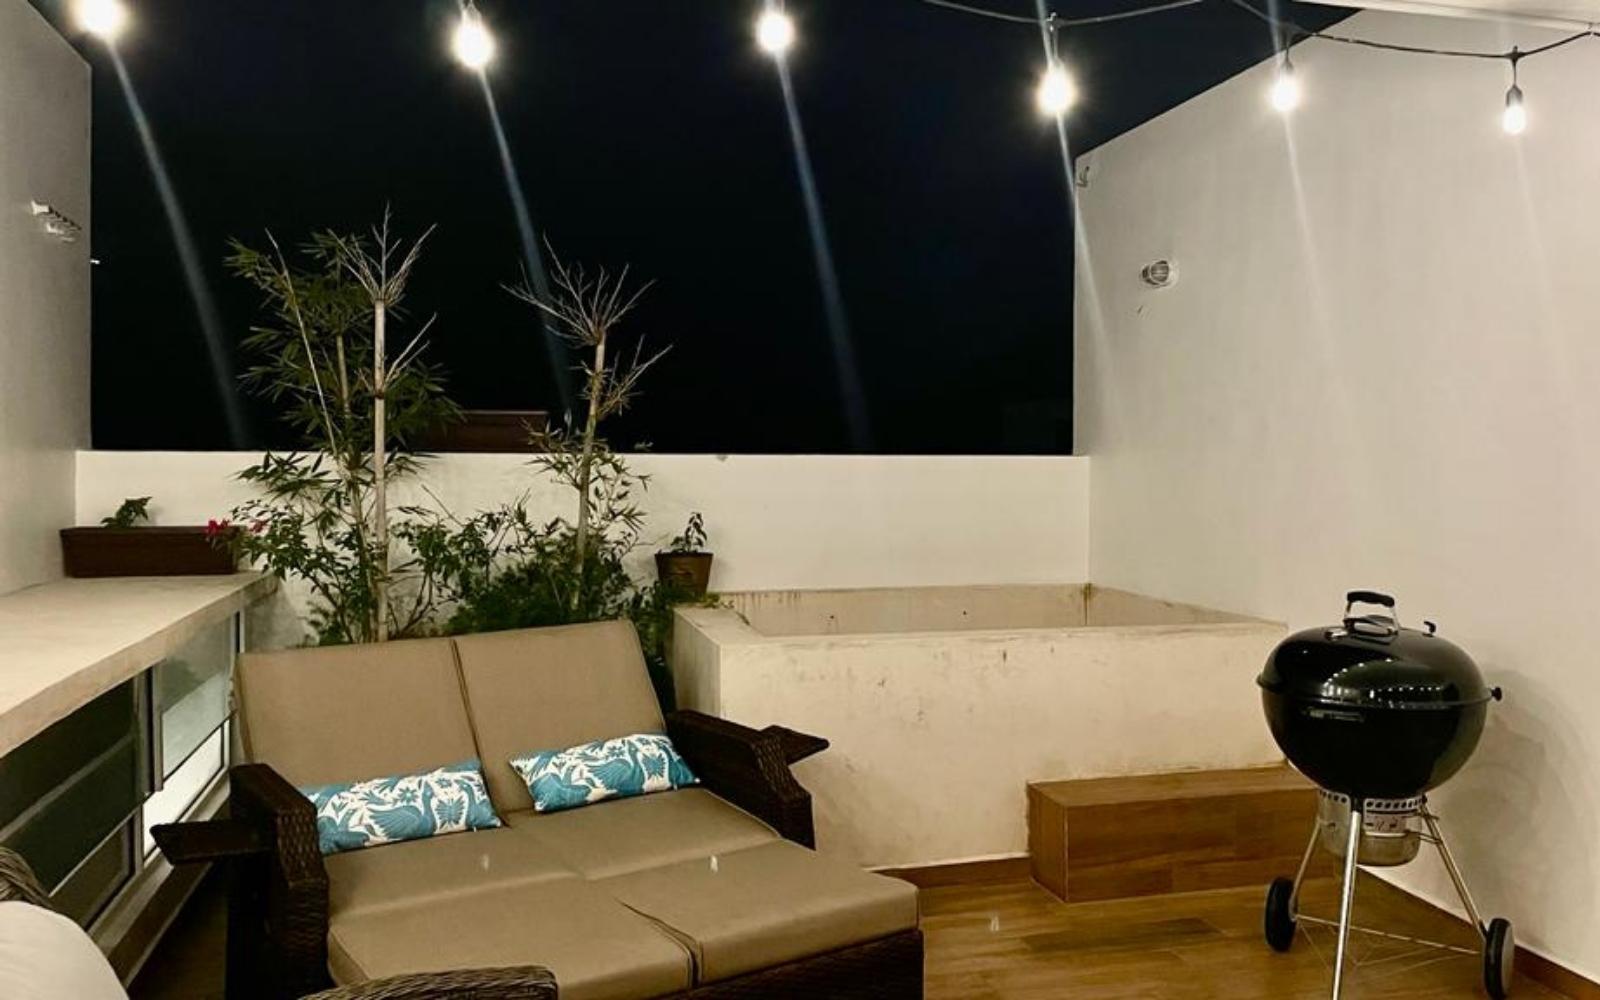 Casa de 3 recamaras con alberca privada en El Tigrillo, Playa del Carmen.